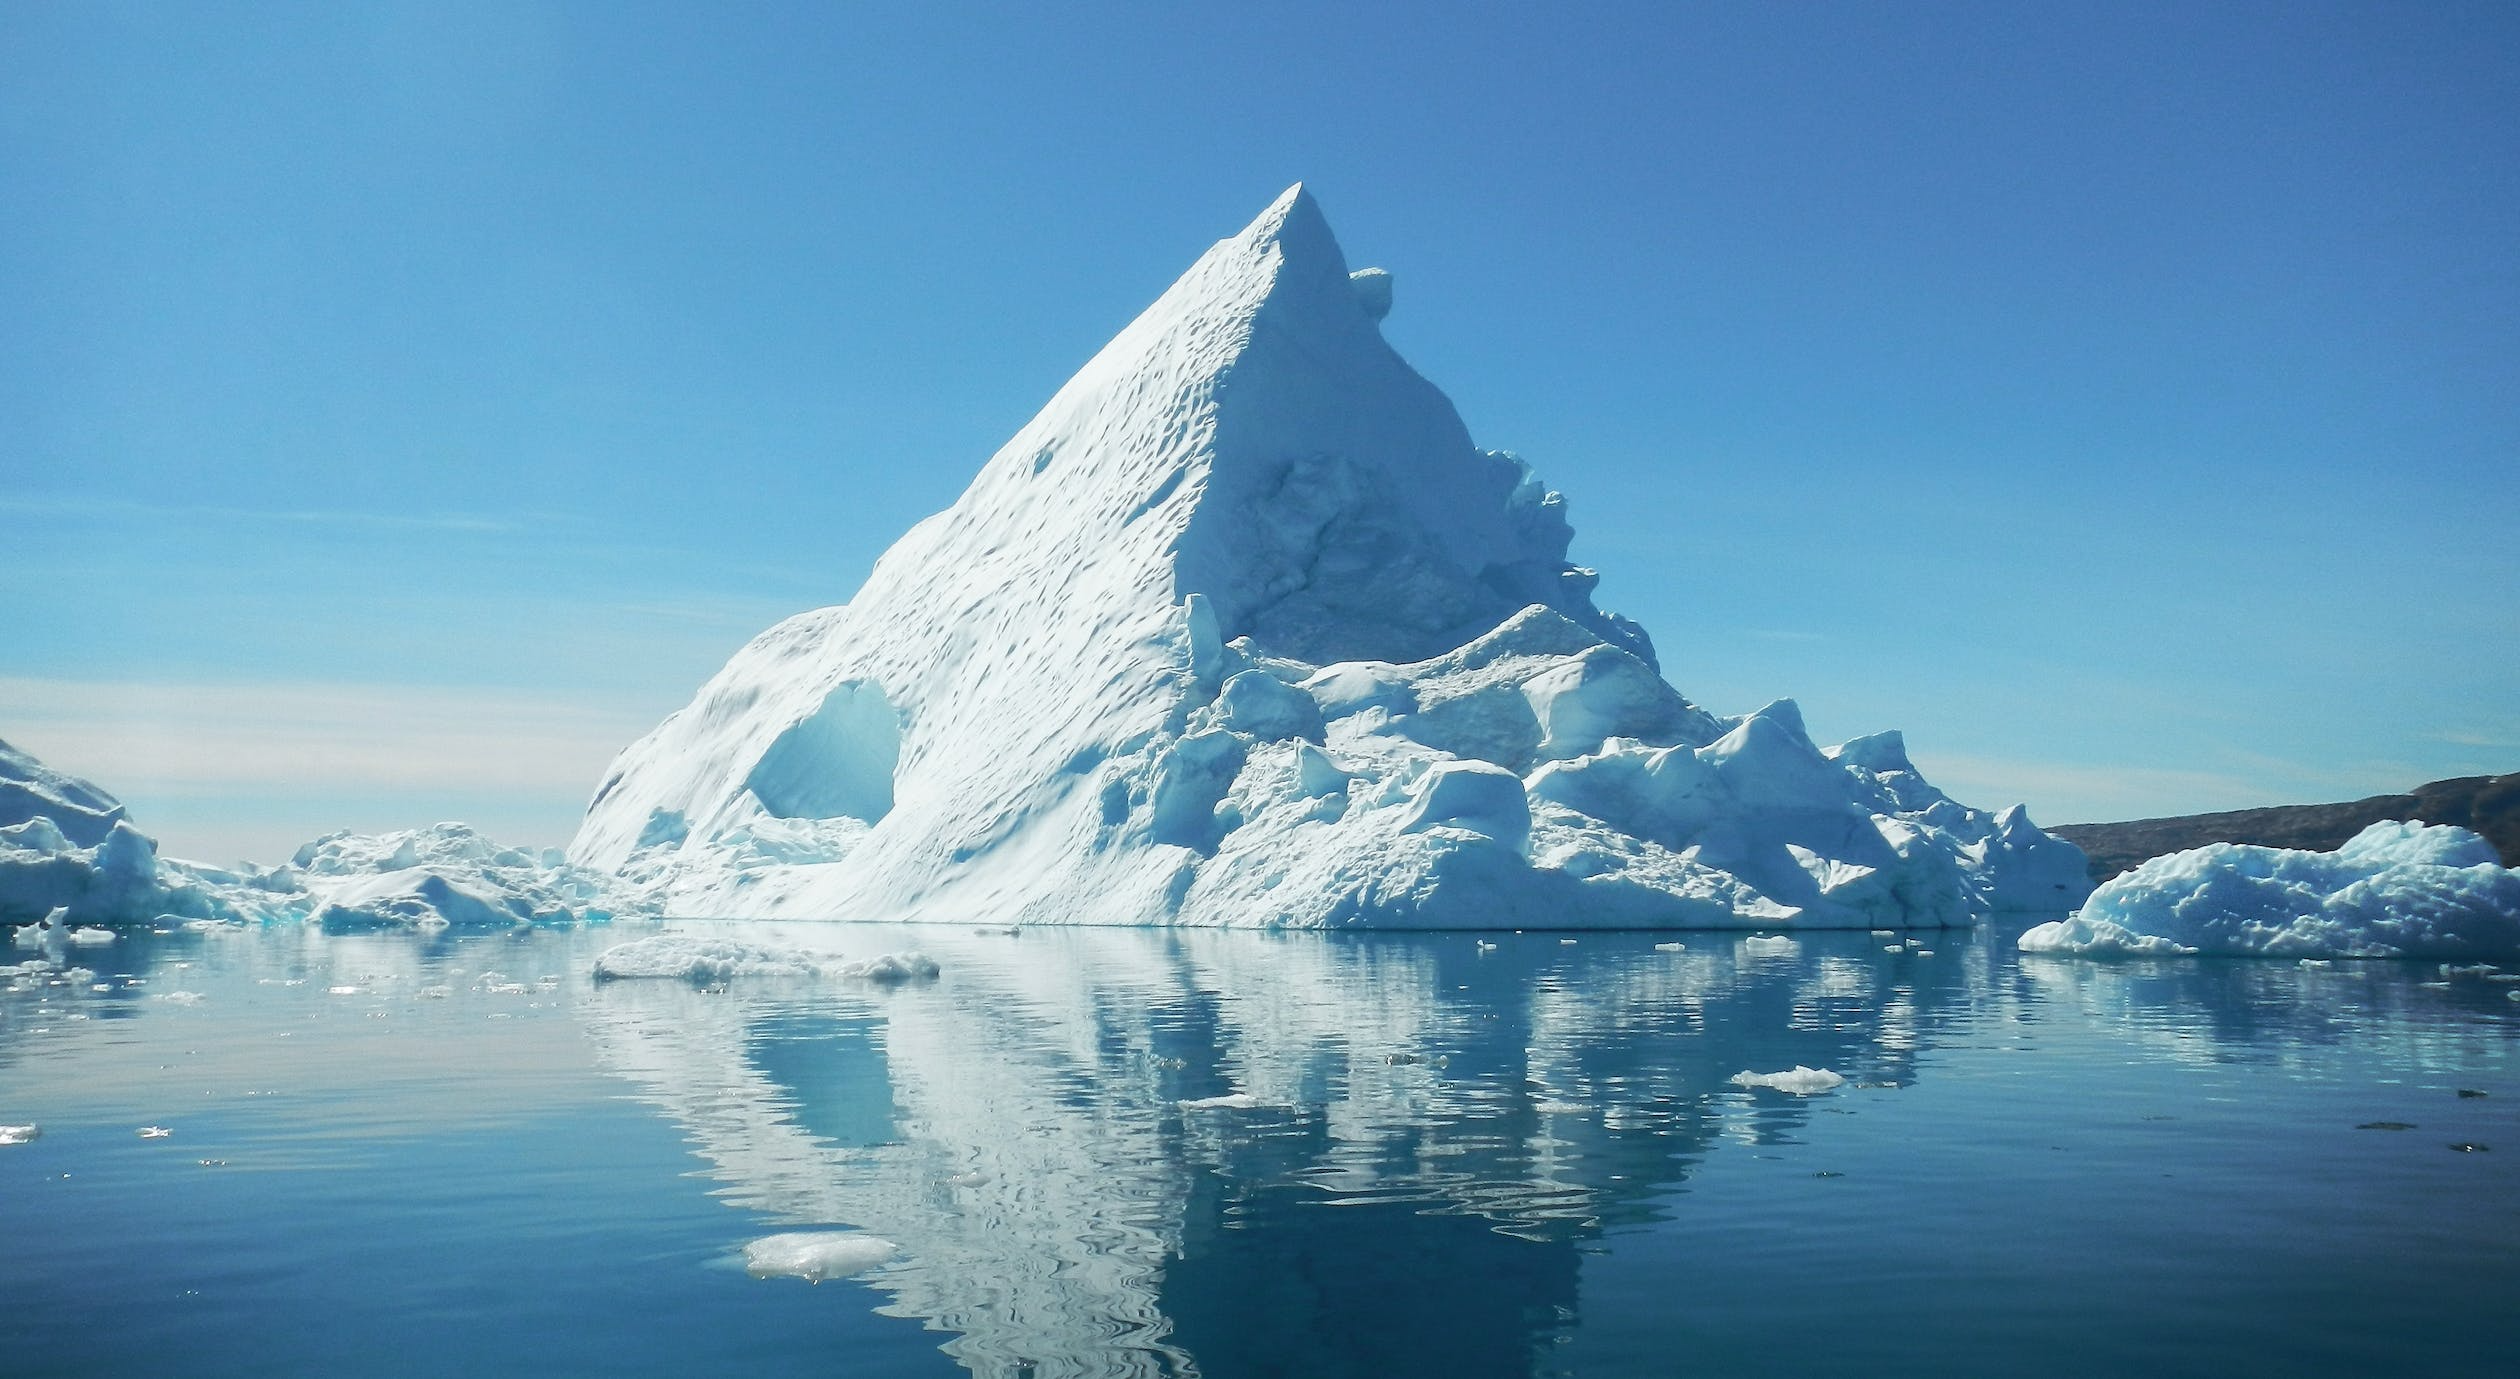 Le calotte glaciali potrebbero ritirarsi venti volte più velocemente del previsto. Lo studio su Nature